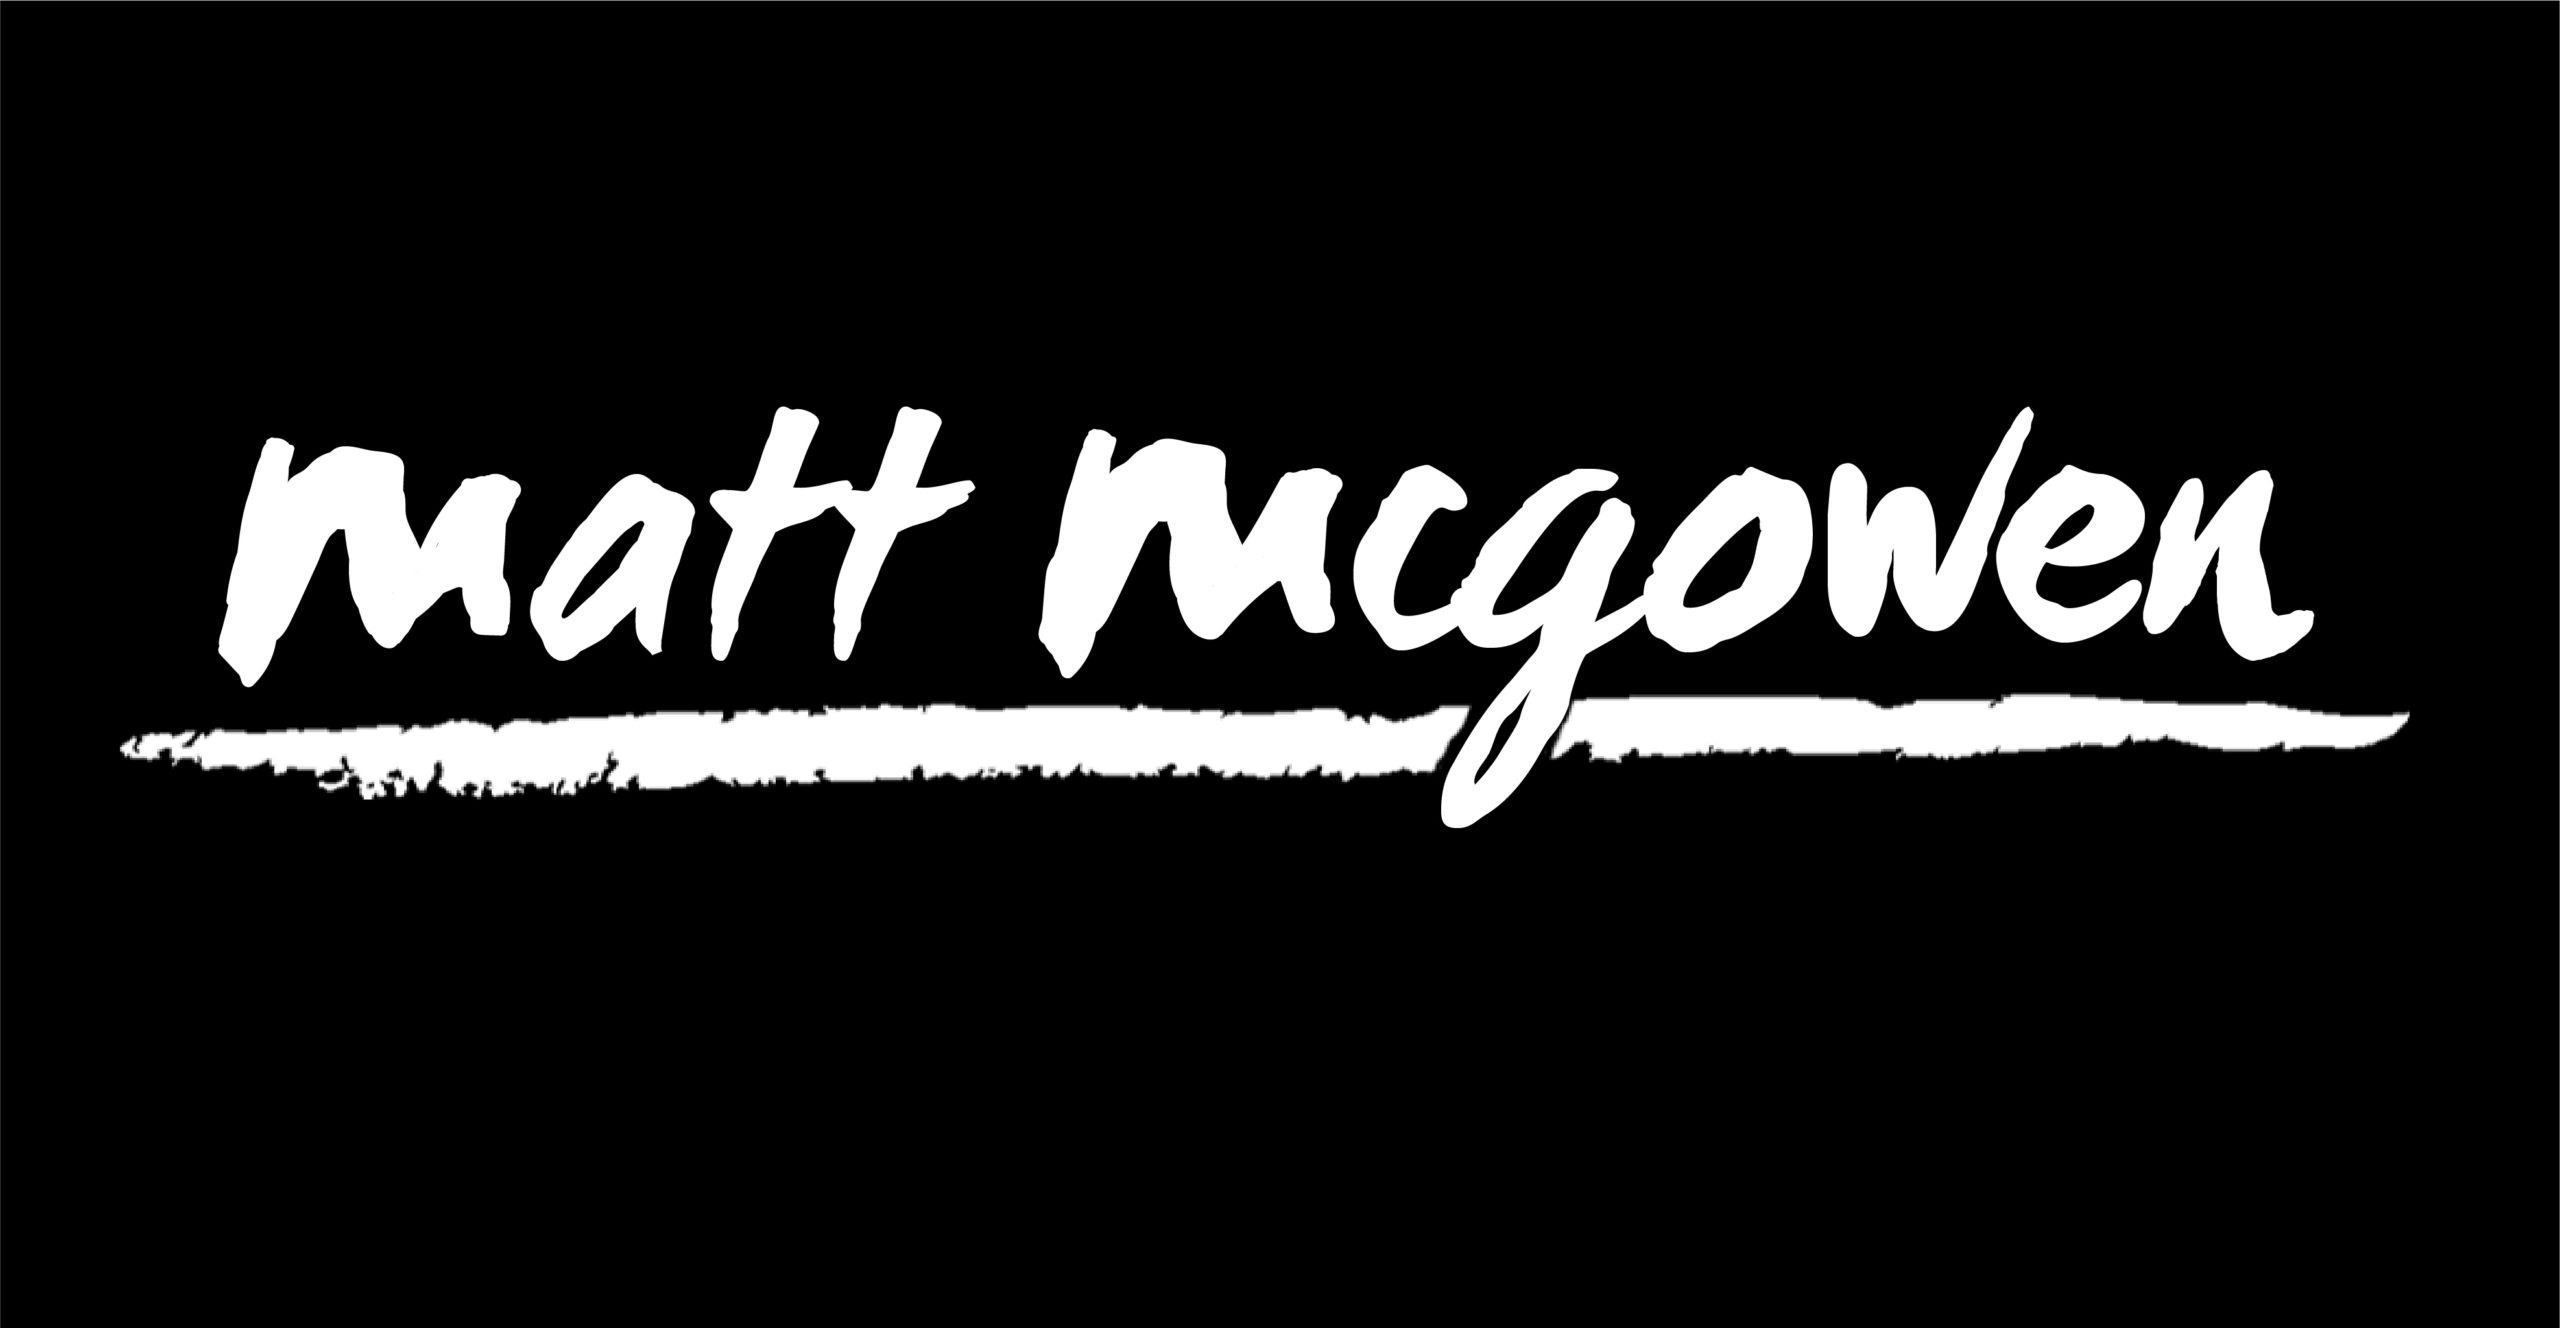 Matt McGowen